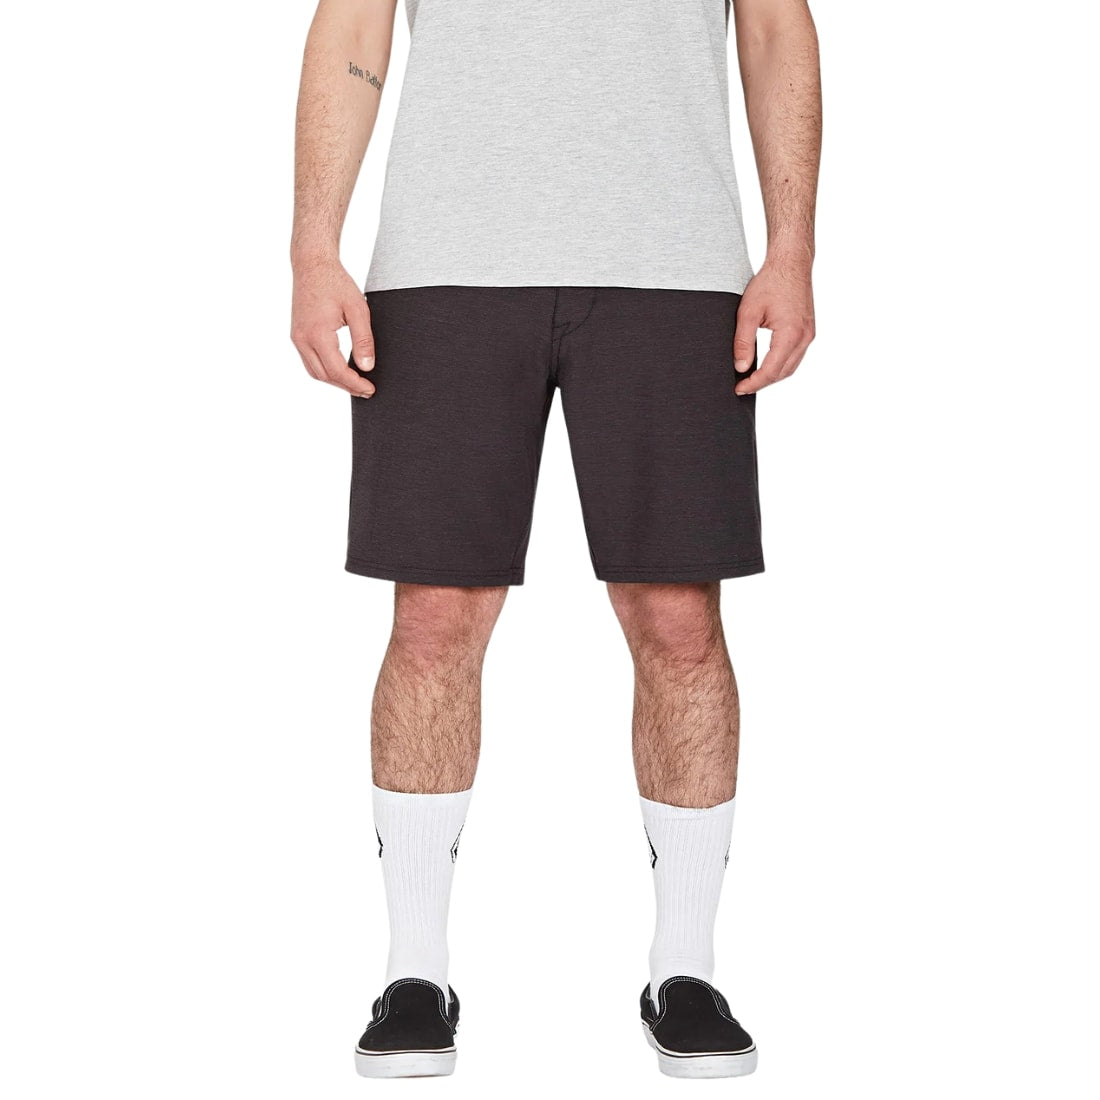 Volcom Slub Frickin Cross Shred 20" Shorts - Black - Mens Hybrid Shorts by Volcom